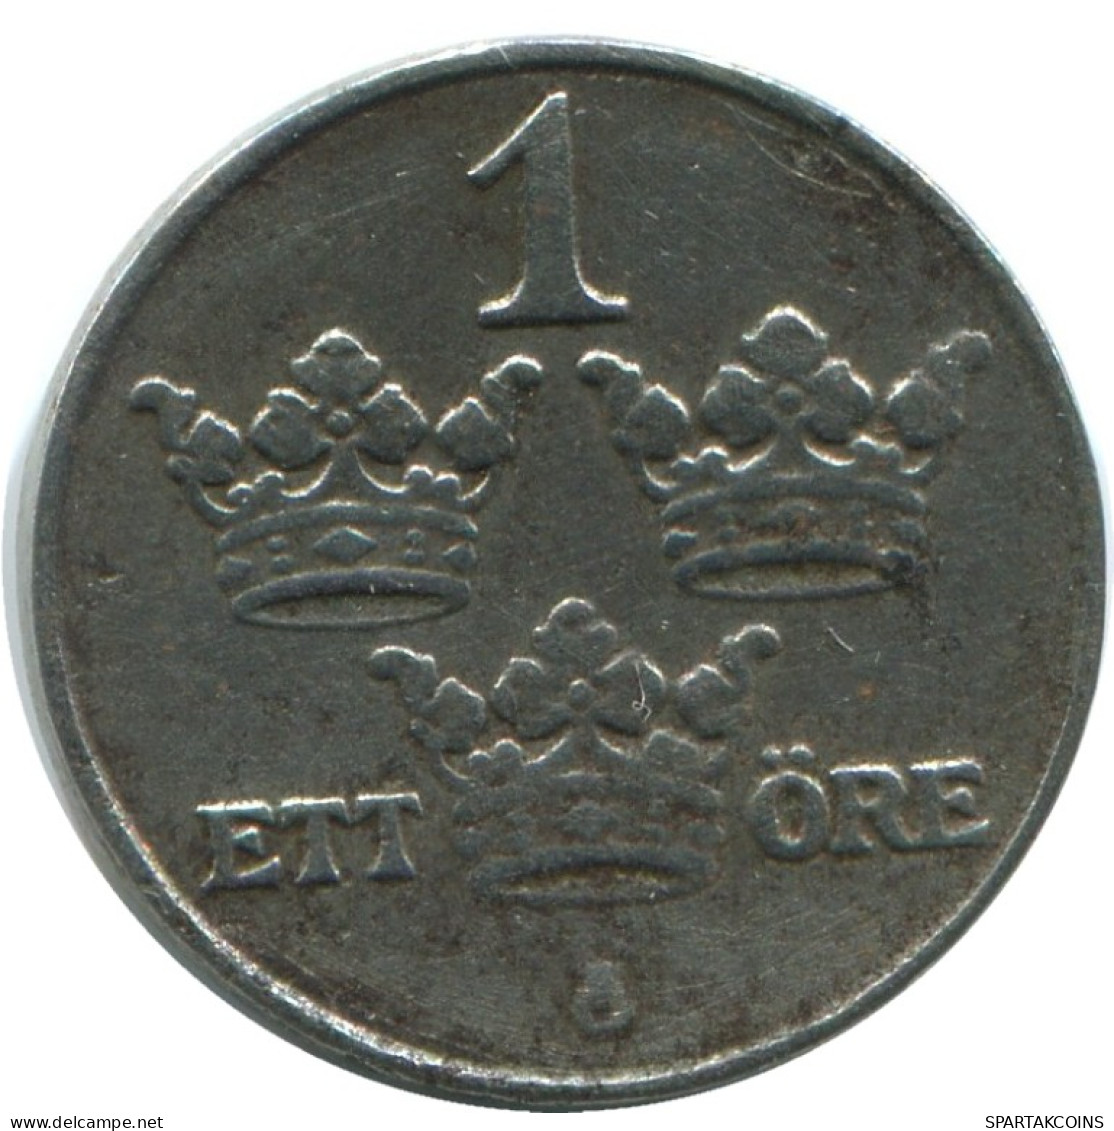 1 ORE 1919 SUECIA SWEDEN Moneda #AD166.2.E.A - Suède